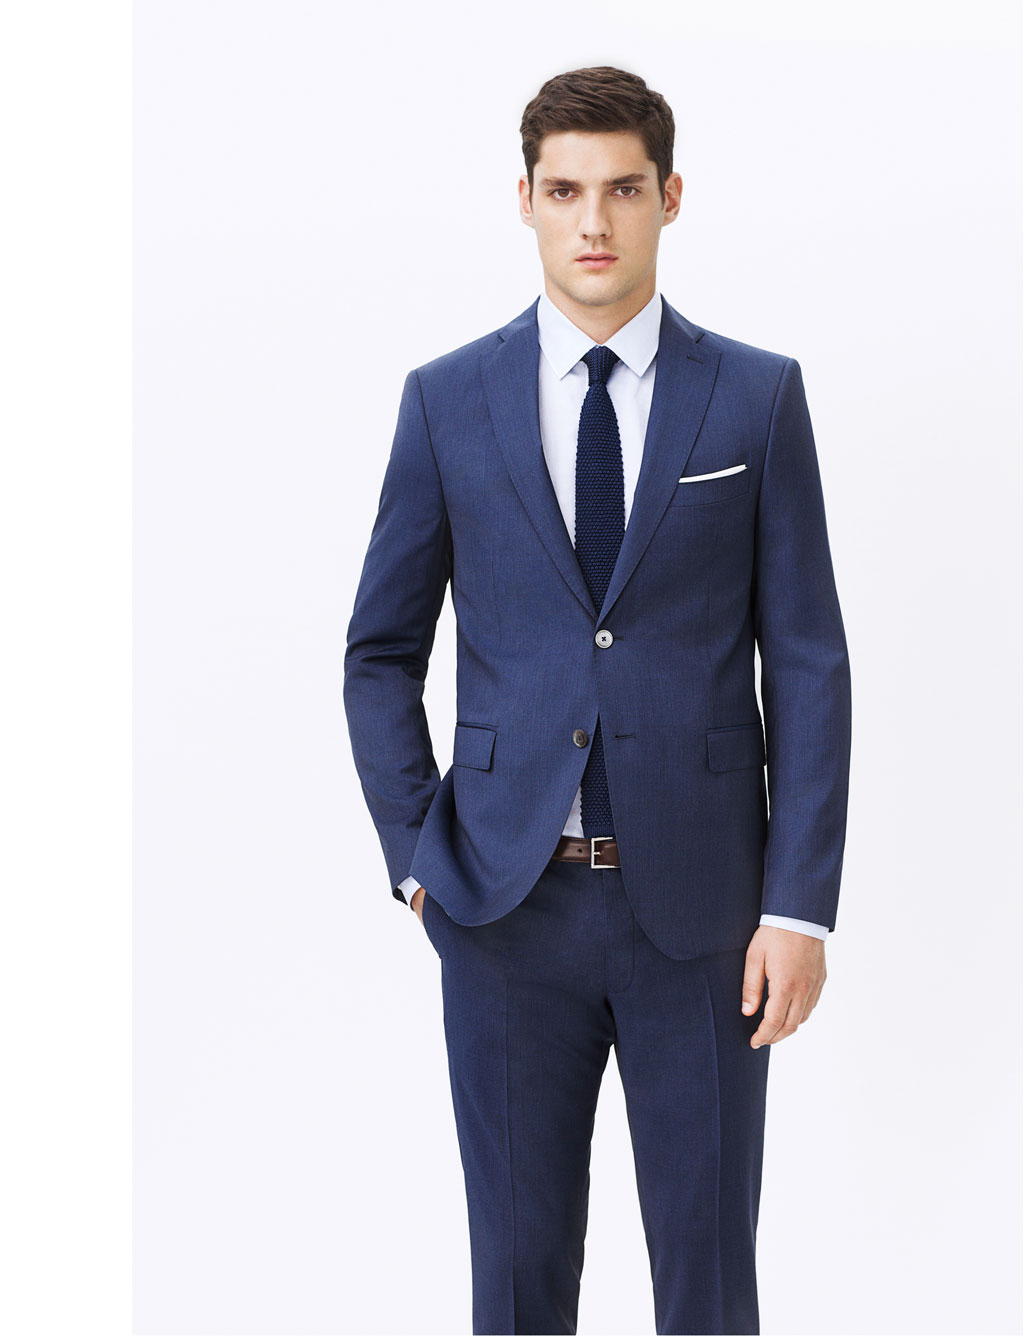 Zara Mens Tailoring Spring Summer 13 Navy Blue Suit